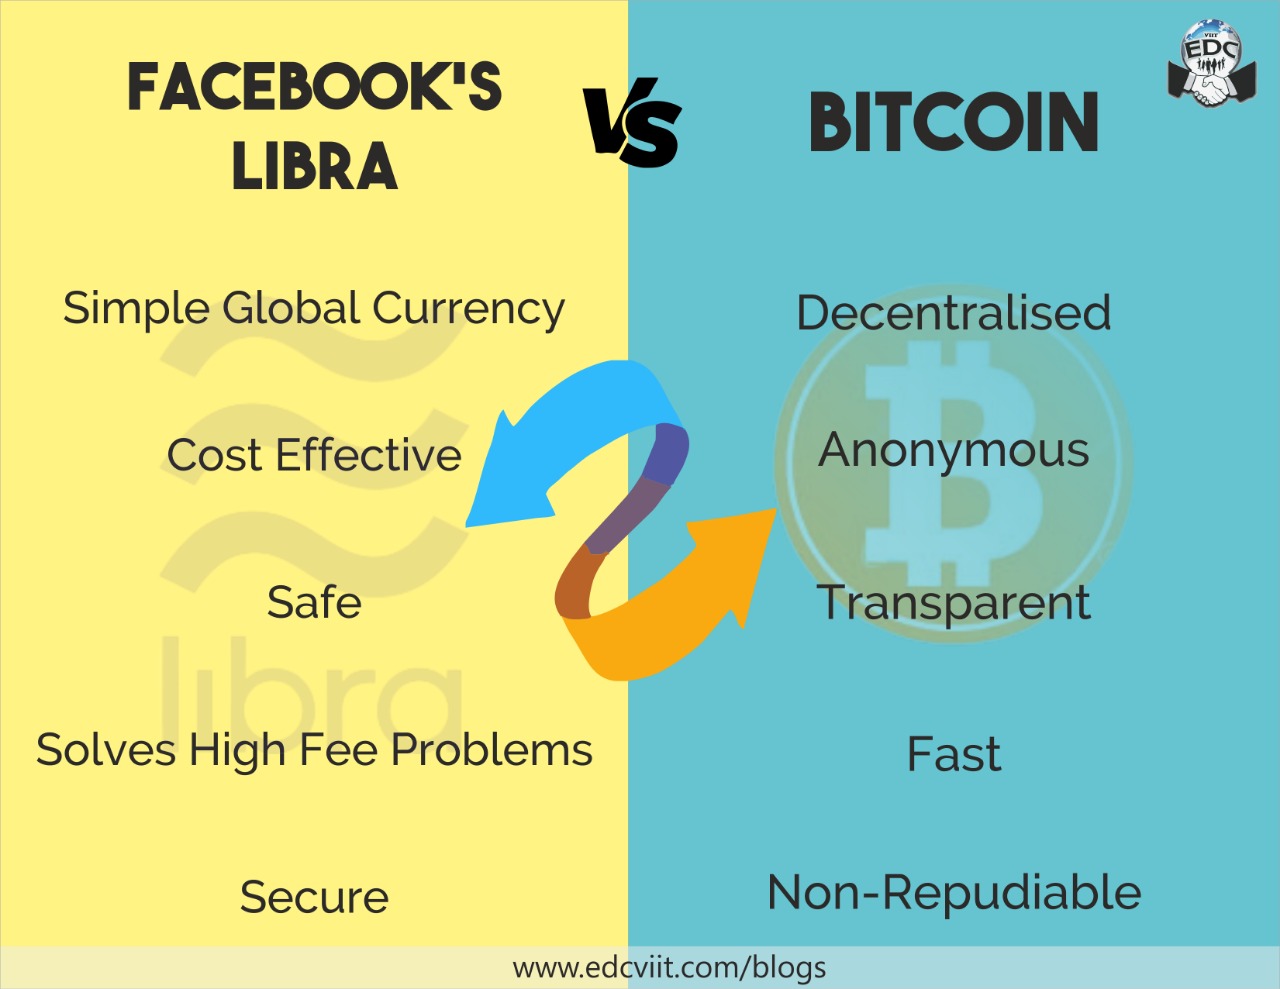 facebooklibra Vs Bitcoin